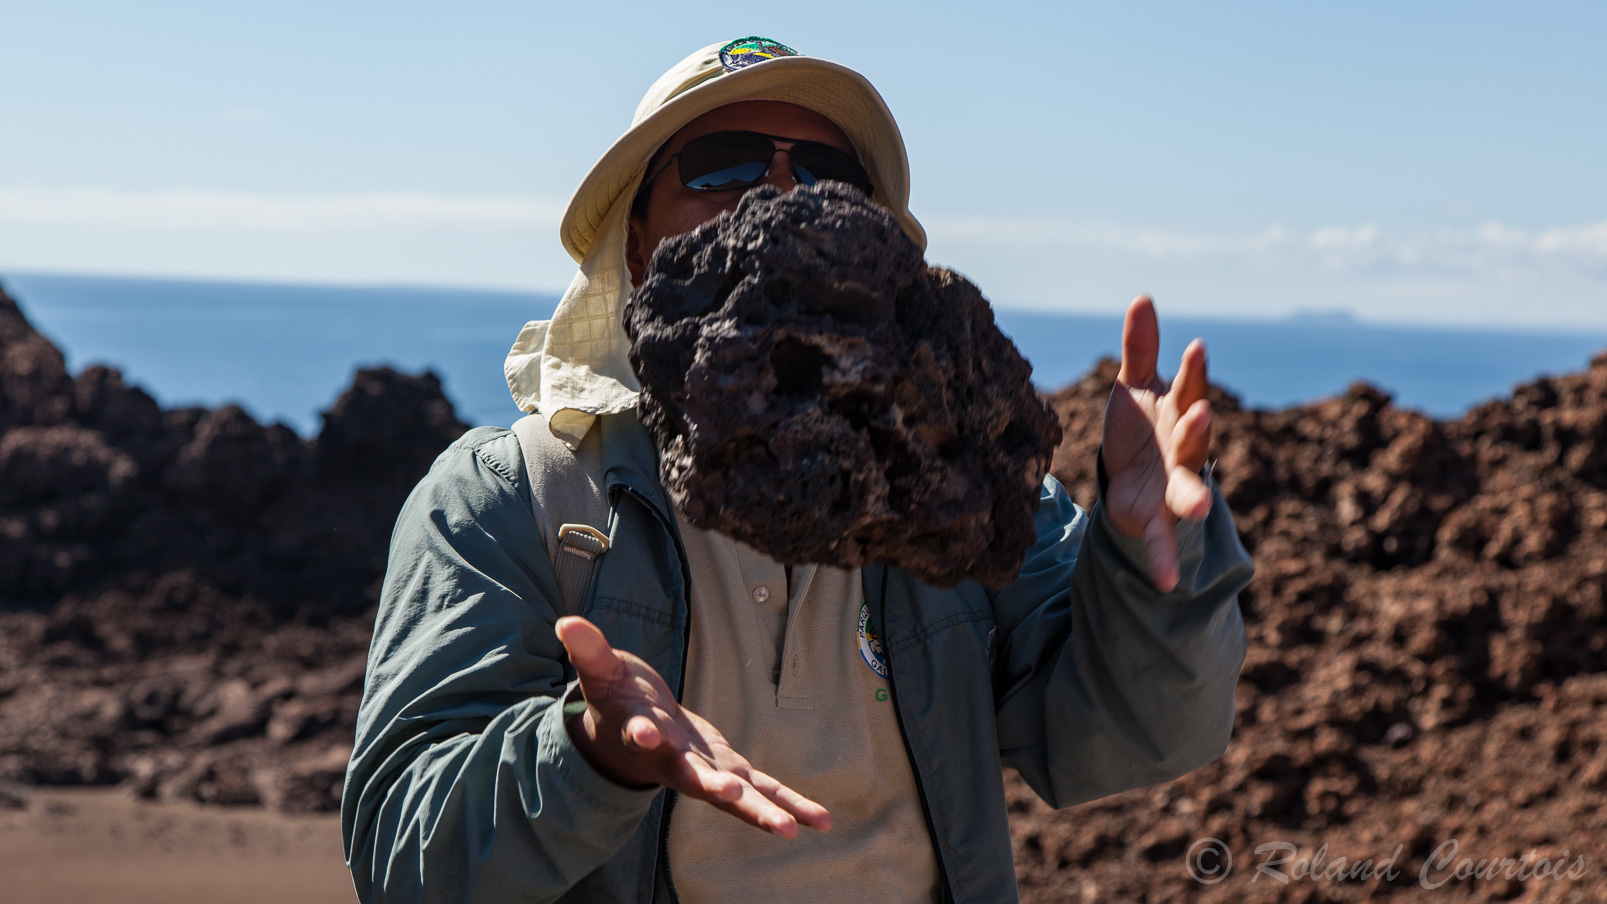 Nottre guide nous explique ce qui rend la roche volcanique si légère ?